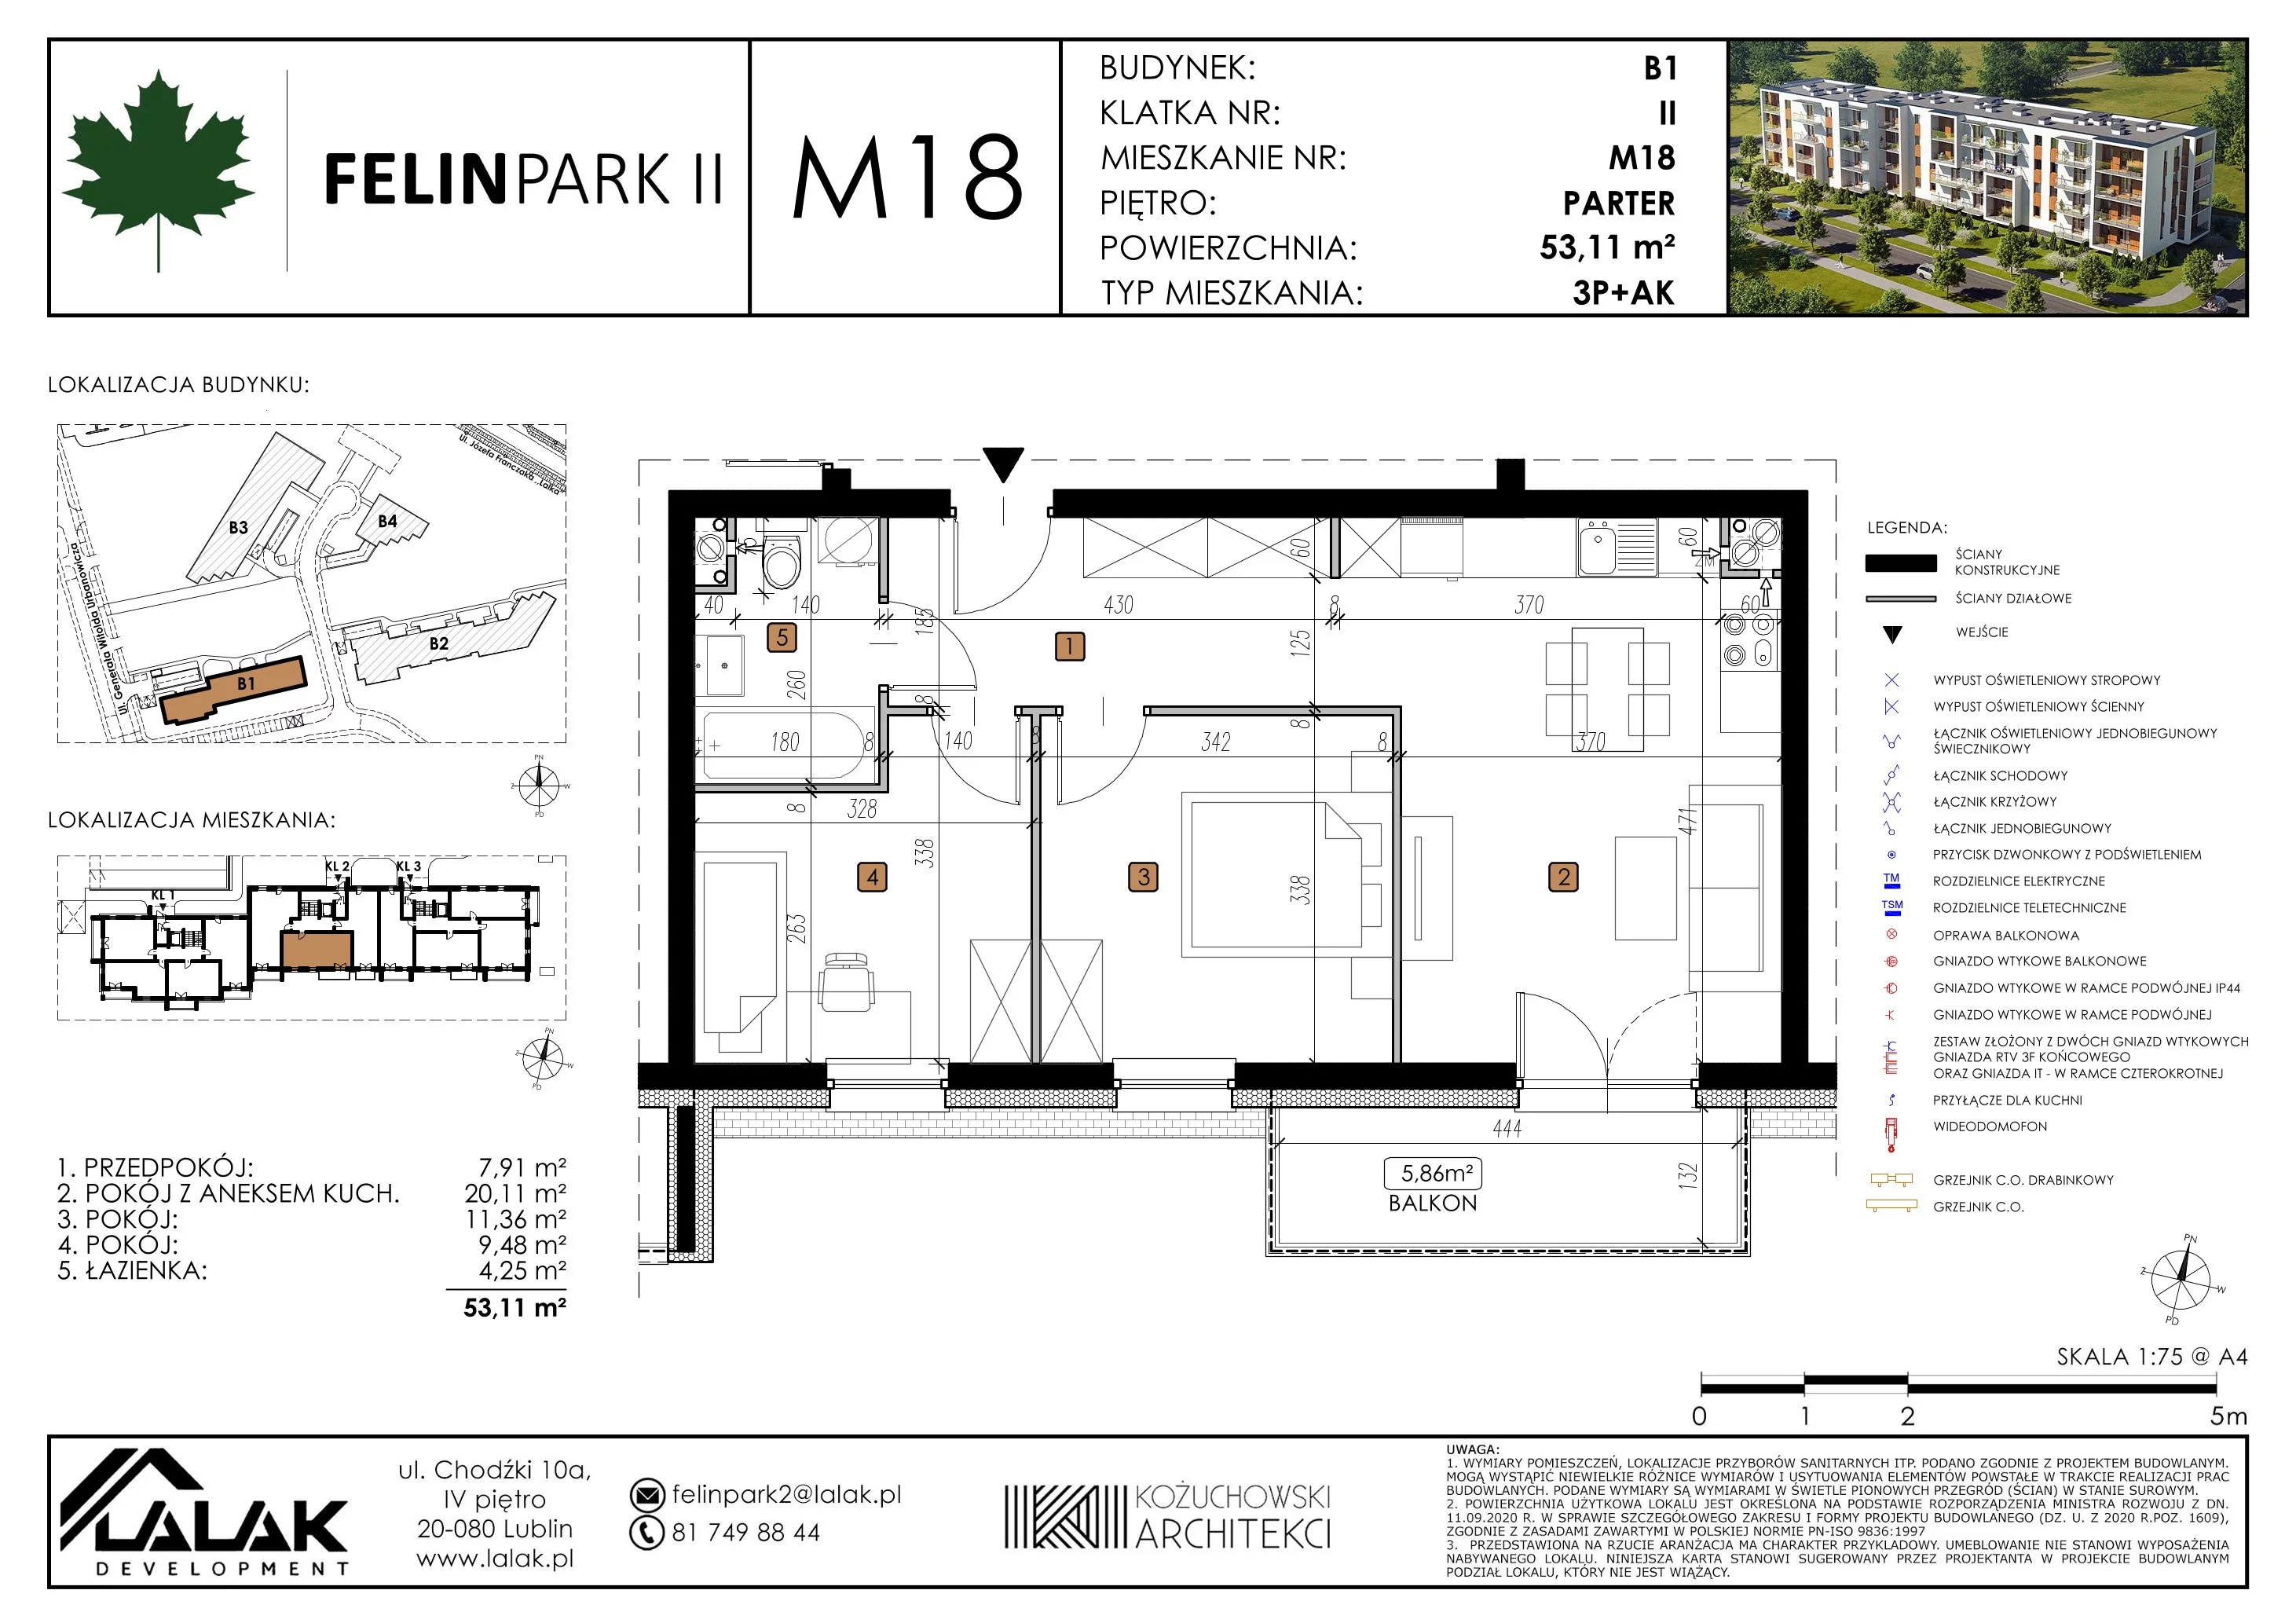 Mieszkanie 53,12 m², parter, oferta nr B1_M18/P, Felin Park II, Lublin, Felin, ul. gen. Stanisława Skalskiego 8-10